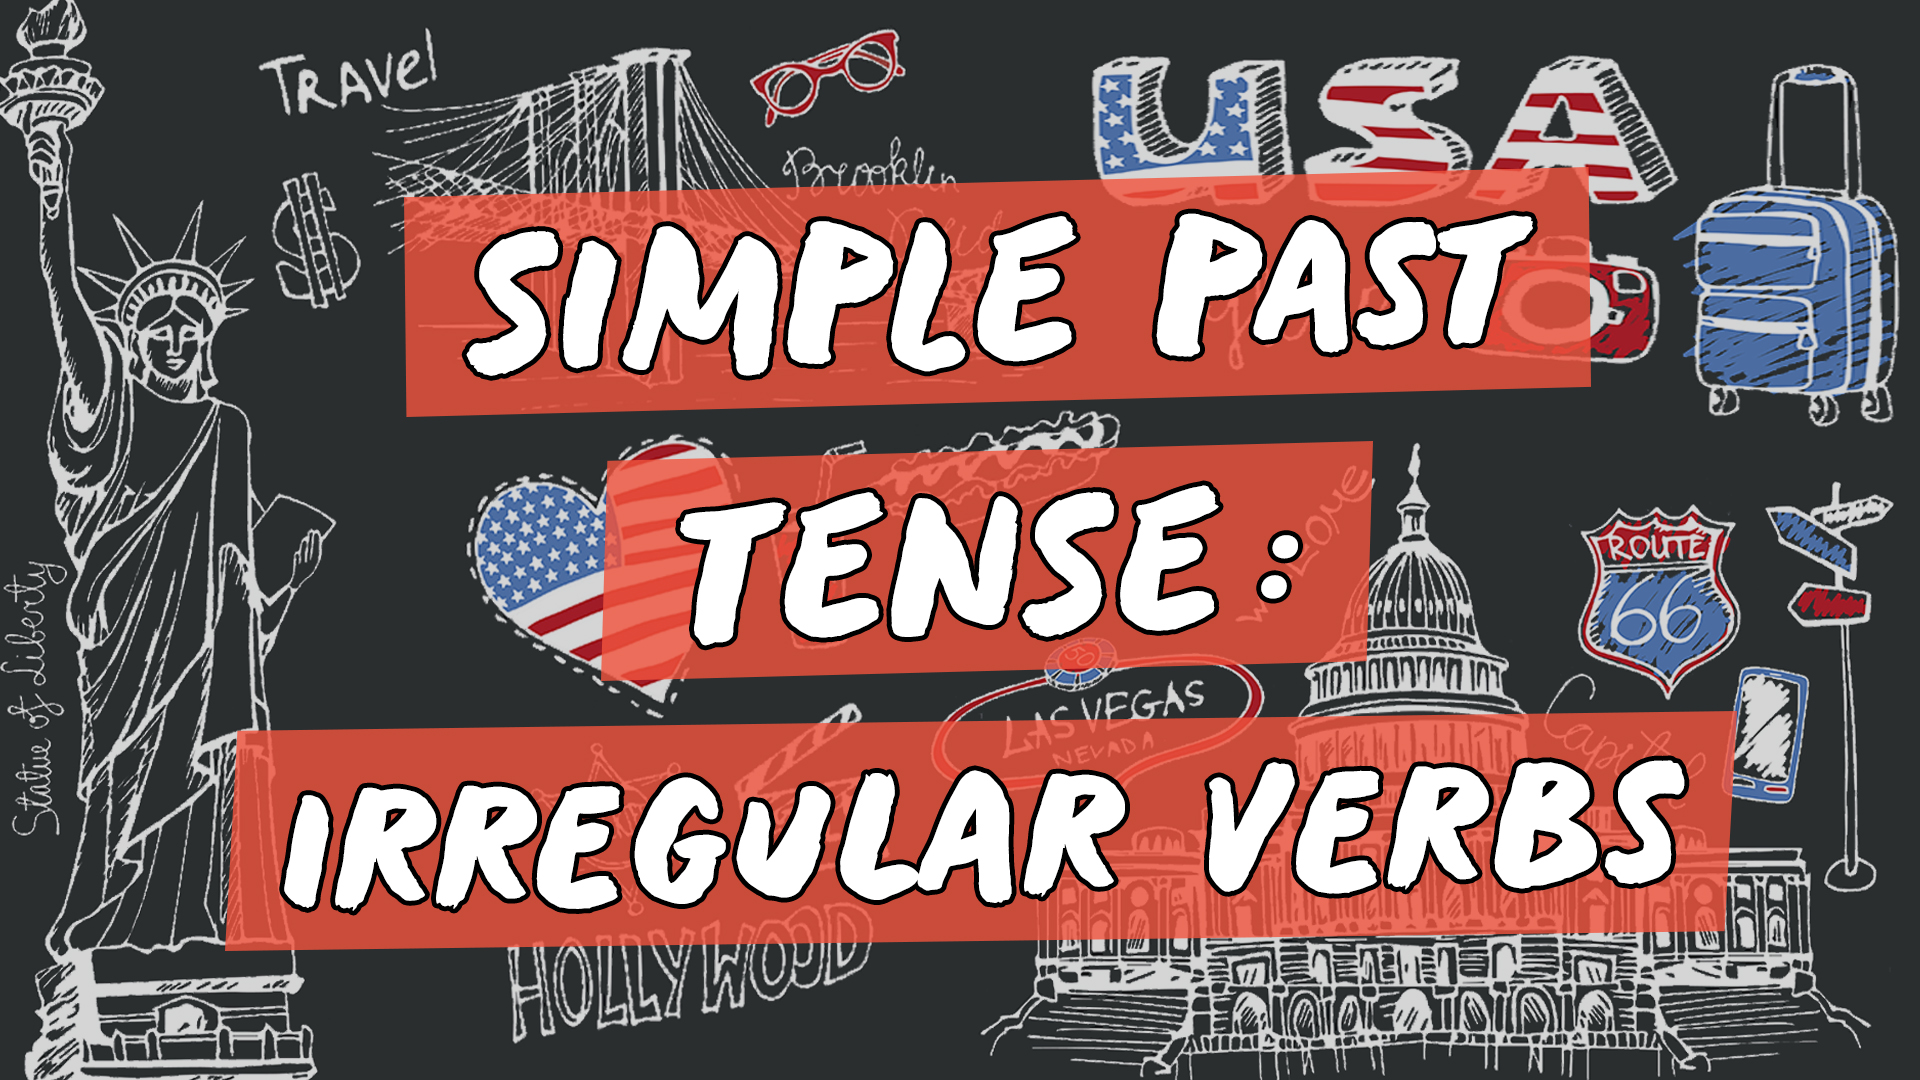 Escrito"Simple Past Tense: Irregular Verbs" sobre representação de vários elementos da cultura do inglês americano.